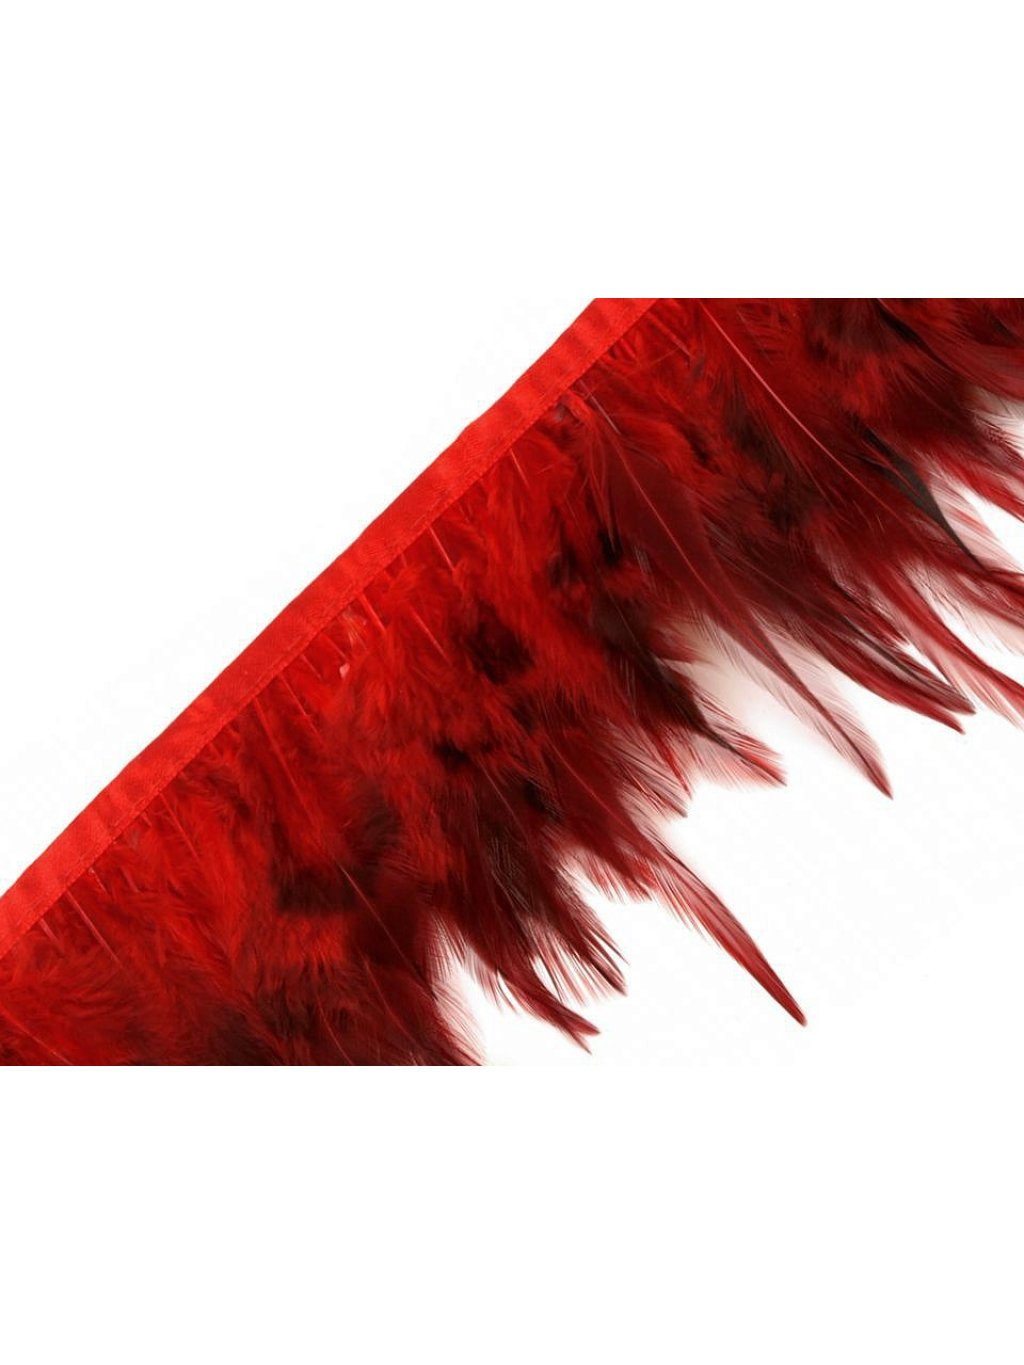 Prýmek - kohoutí peří červené šíře 12 cm